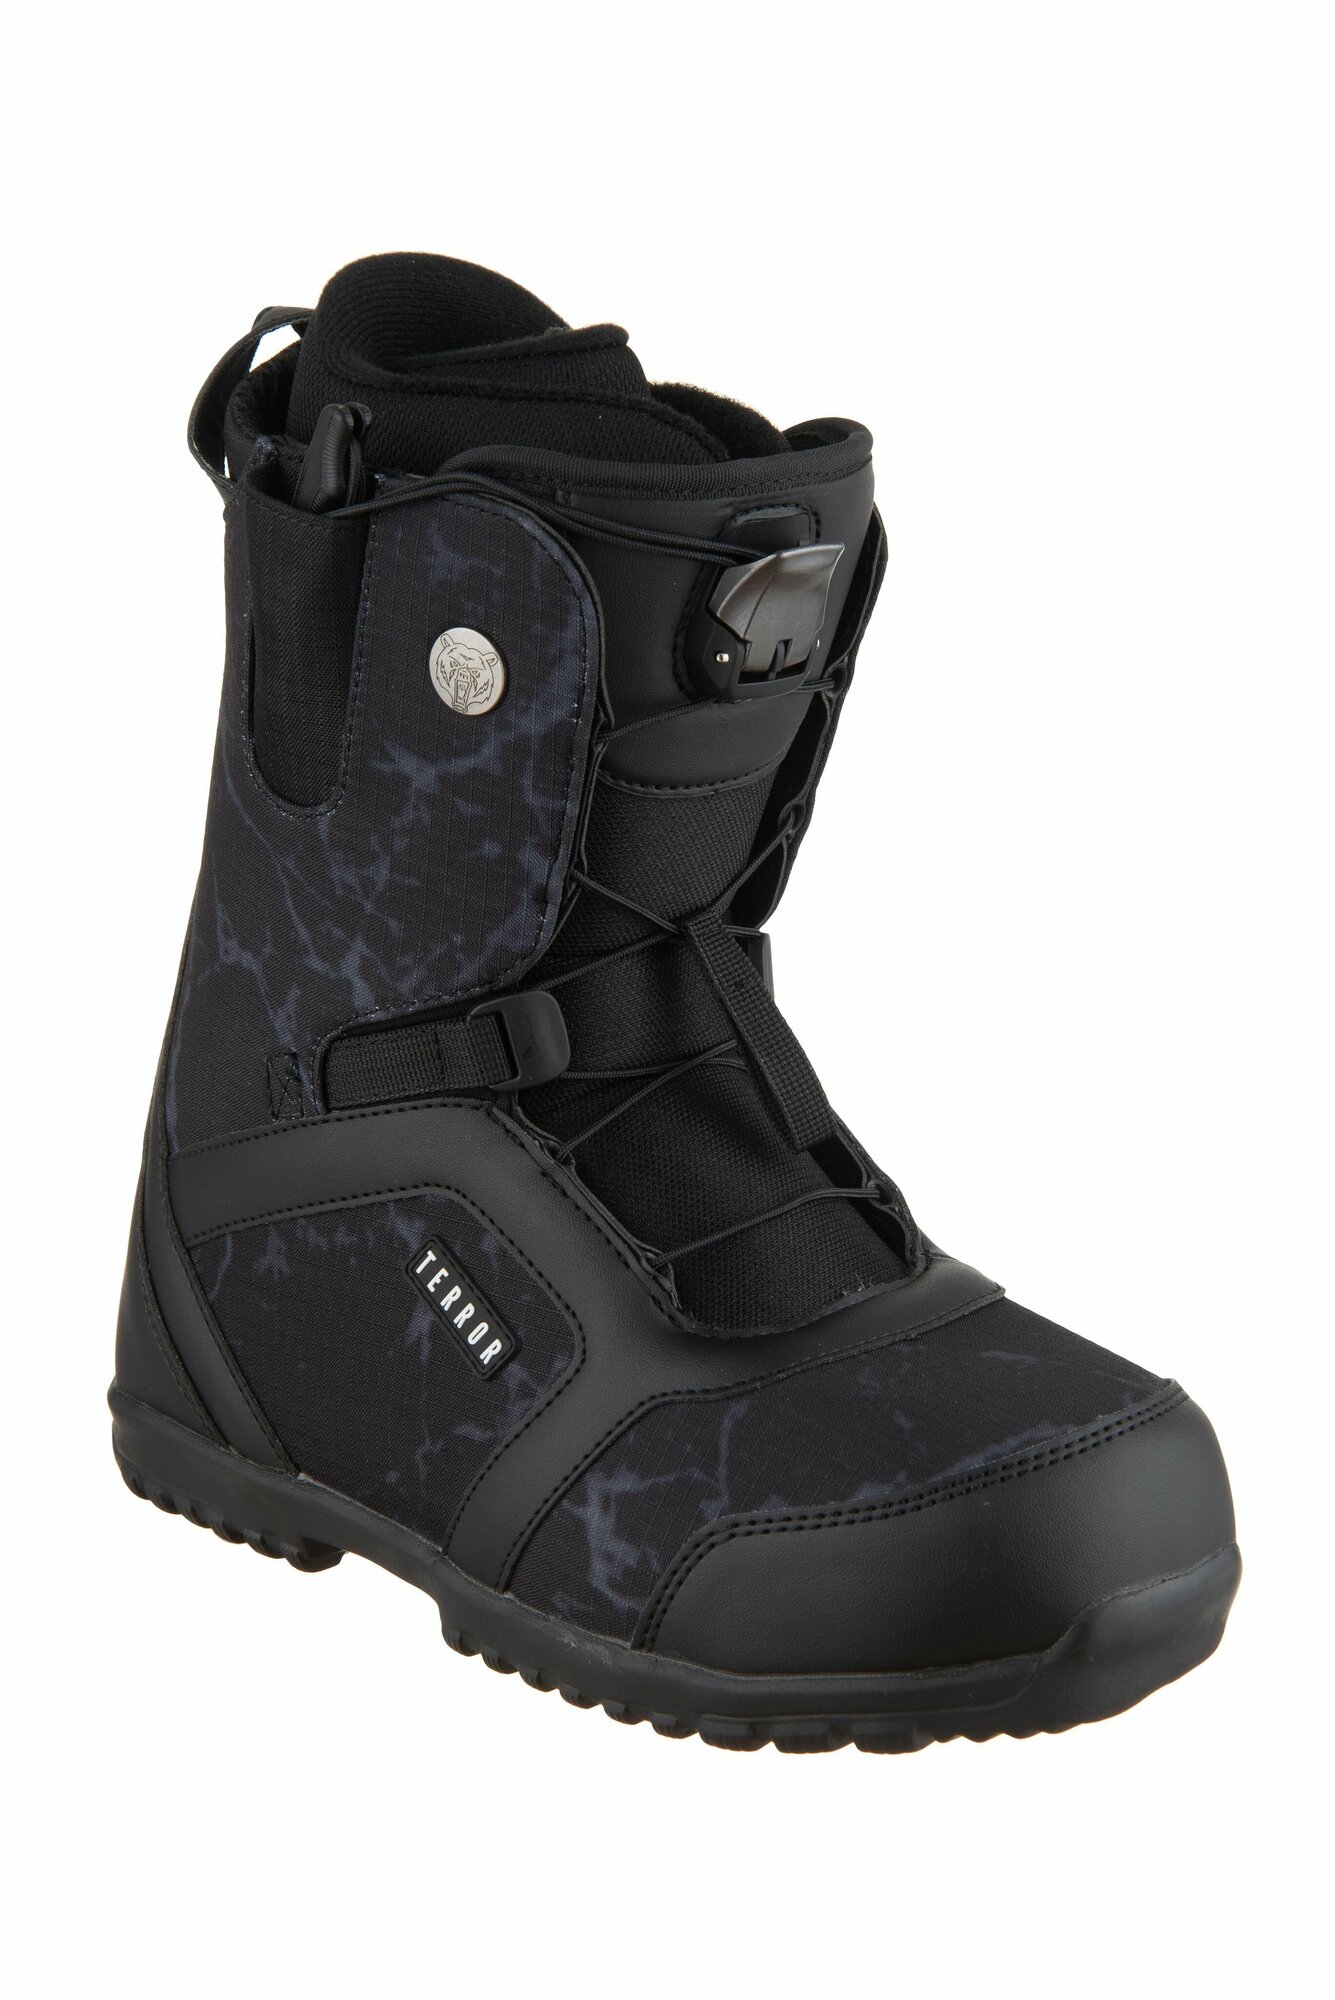 Ботинки сноубордические TERROR CREW Fastec Black (40 RU / 26,5 cm)